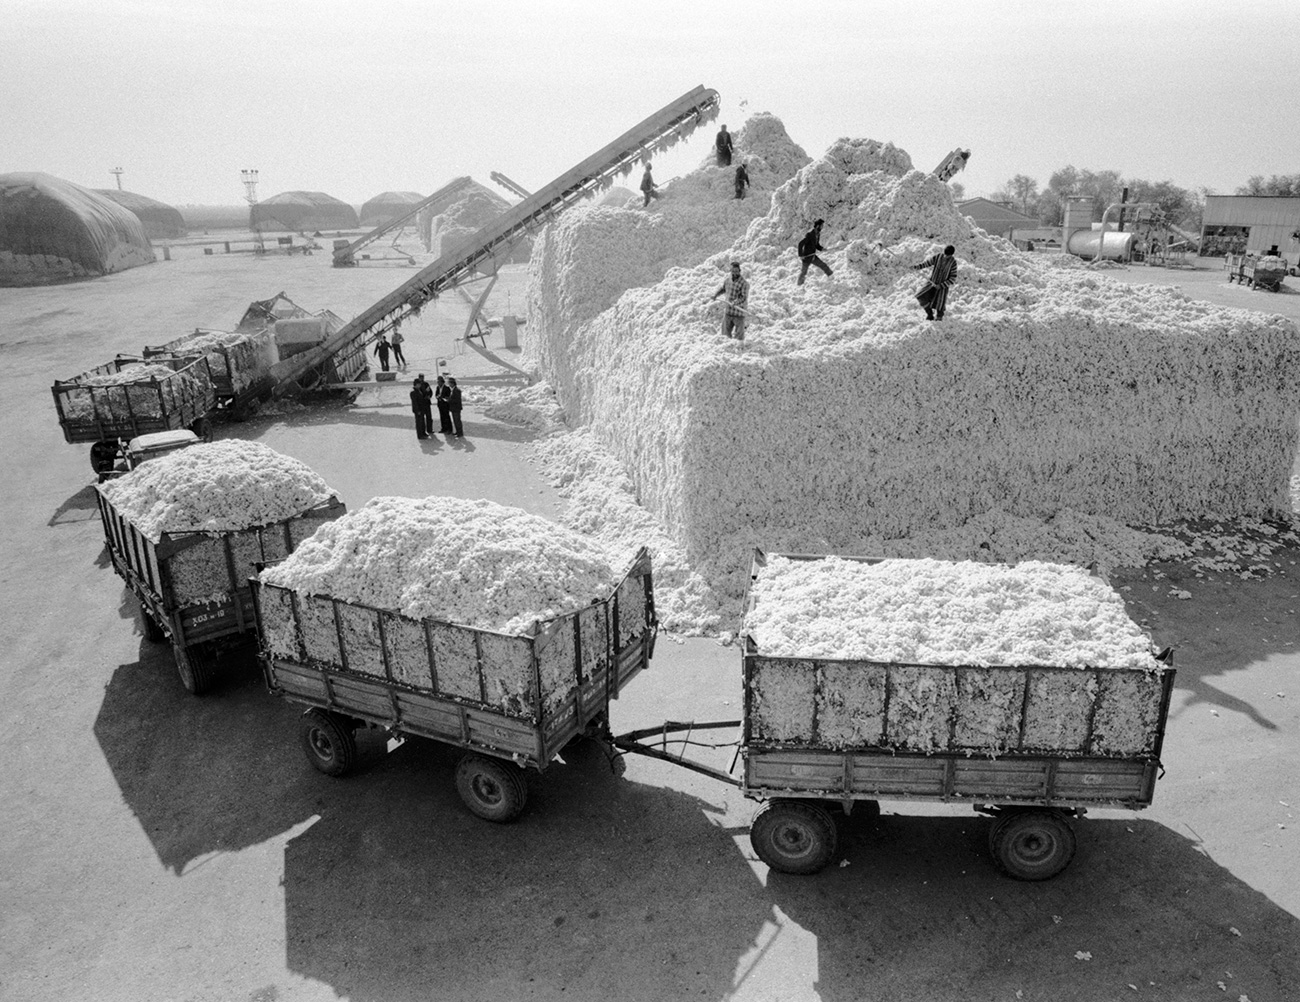 Kako bi nadoknadili nedostatak, berači pamuka su počeli stavljati kamenje u svoje vreće, a prazni vagoni su slani u Moskvu, gdje bi nepošteni dužnosnici uzimali mito kako bi ih zabilježili kao pune. // Kazačka SSR